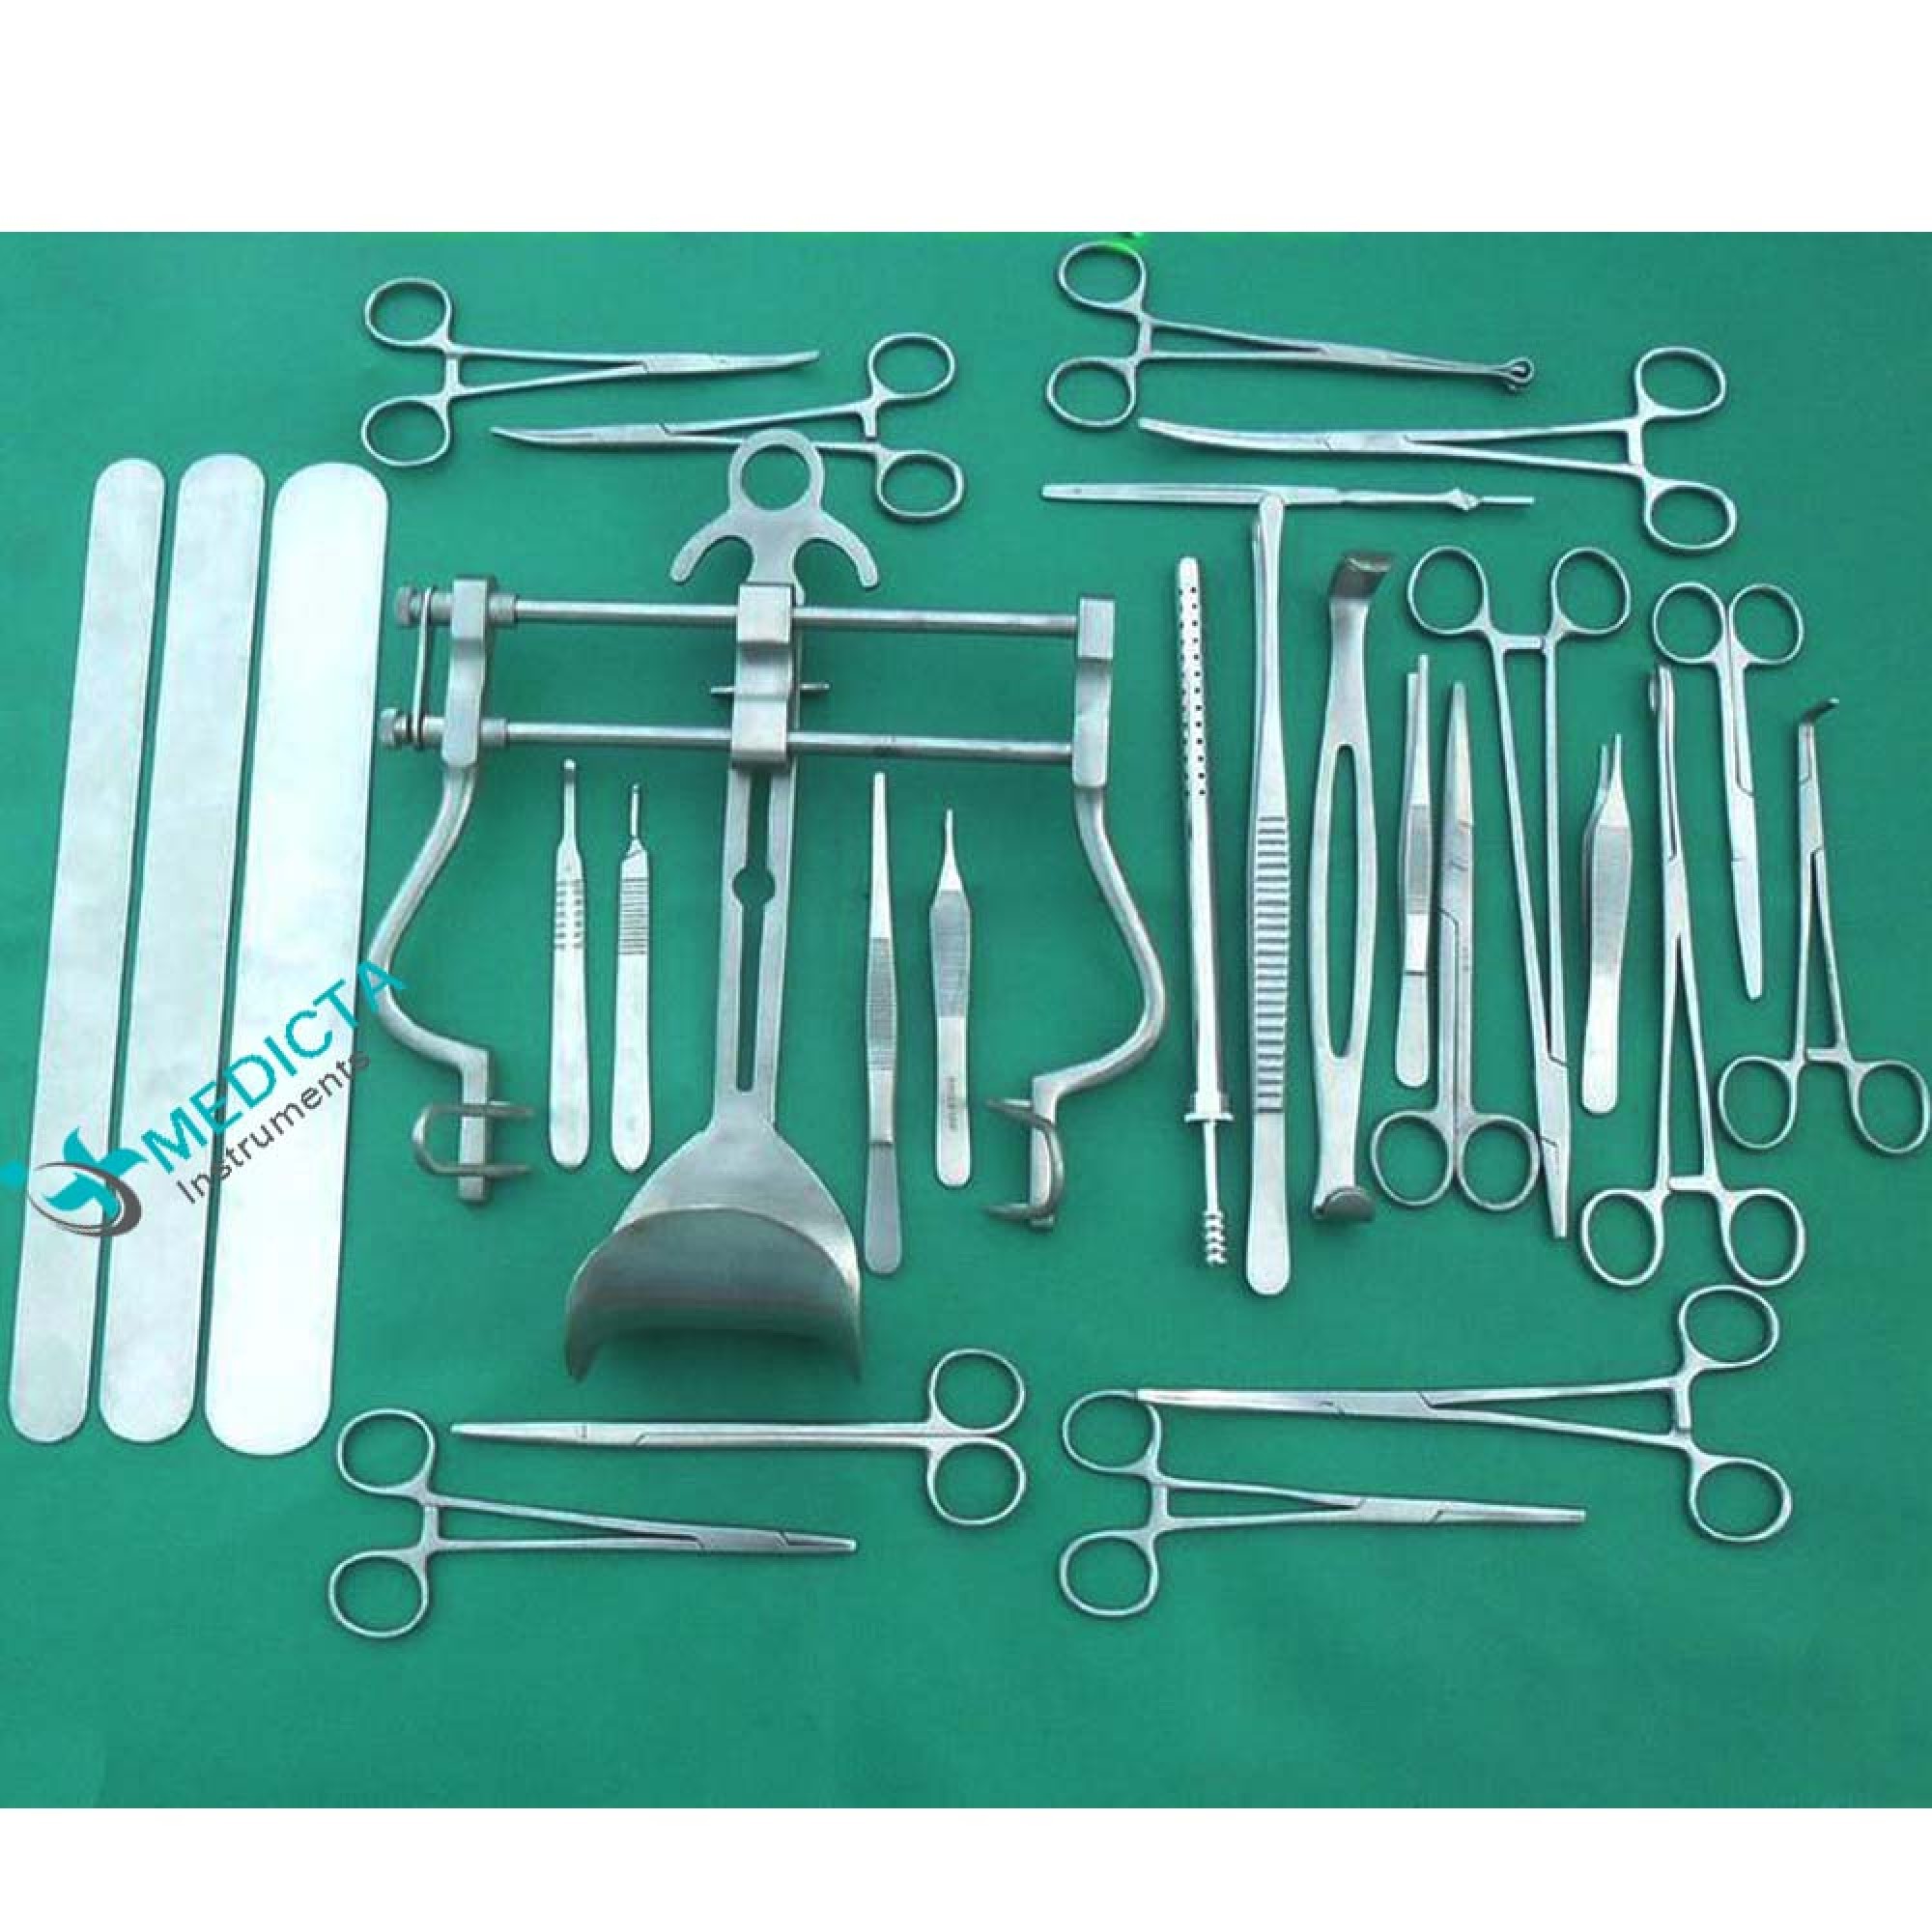 Инструменты для аппендэктомии. Хирургические инструменты для лапаротомии. Набор инструментов для лапаротомии хирургия. Retractor (Medical) хирургические инструменты. Хирургический набор для лапаротомии.